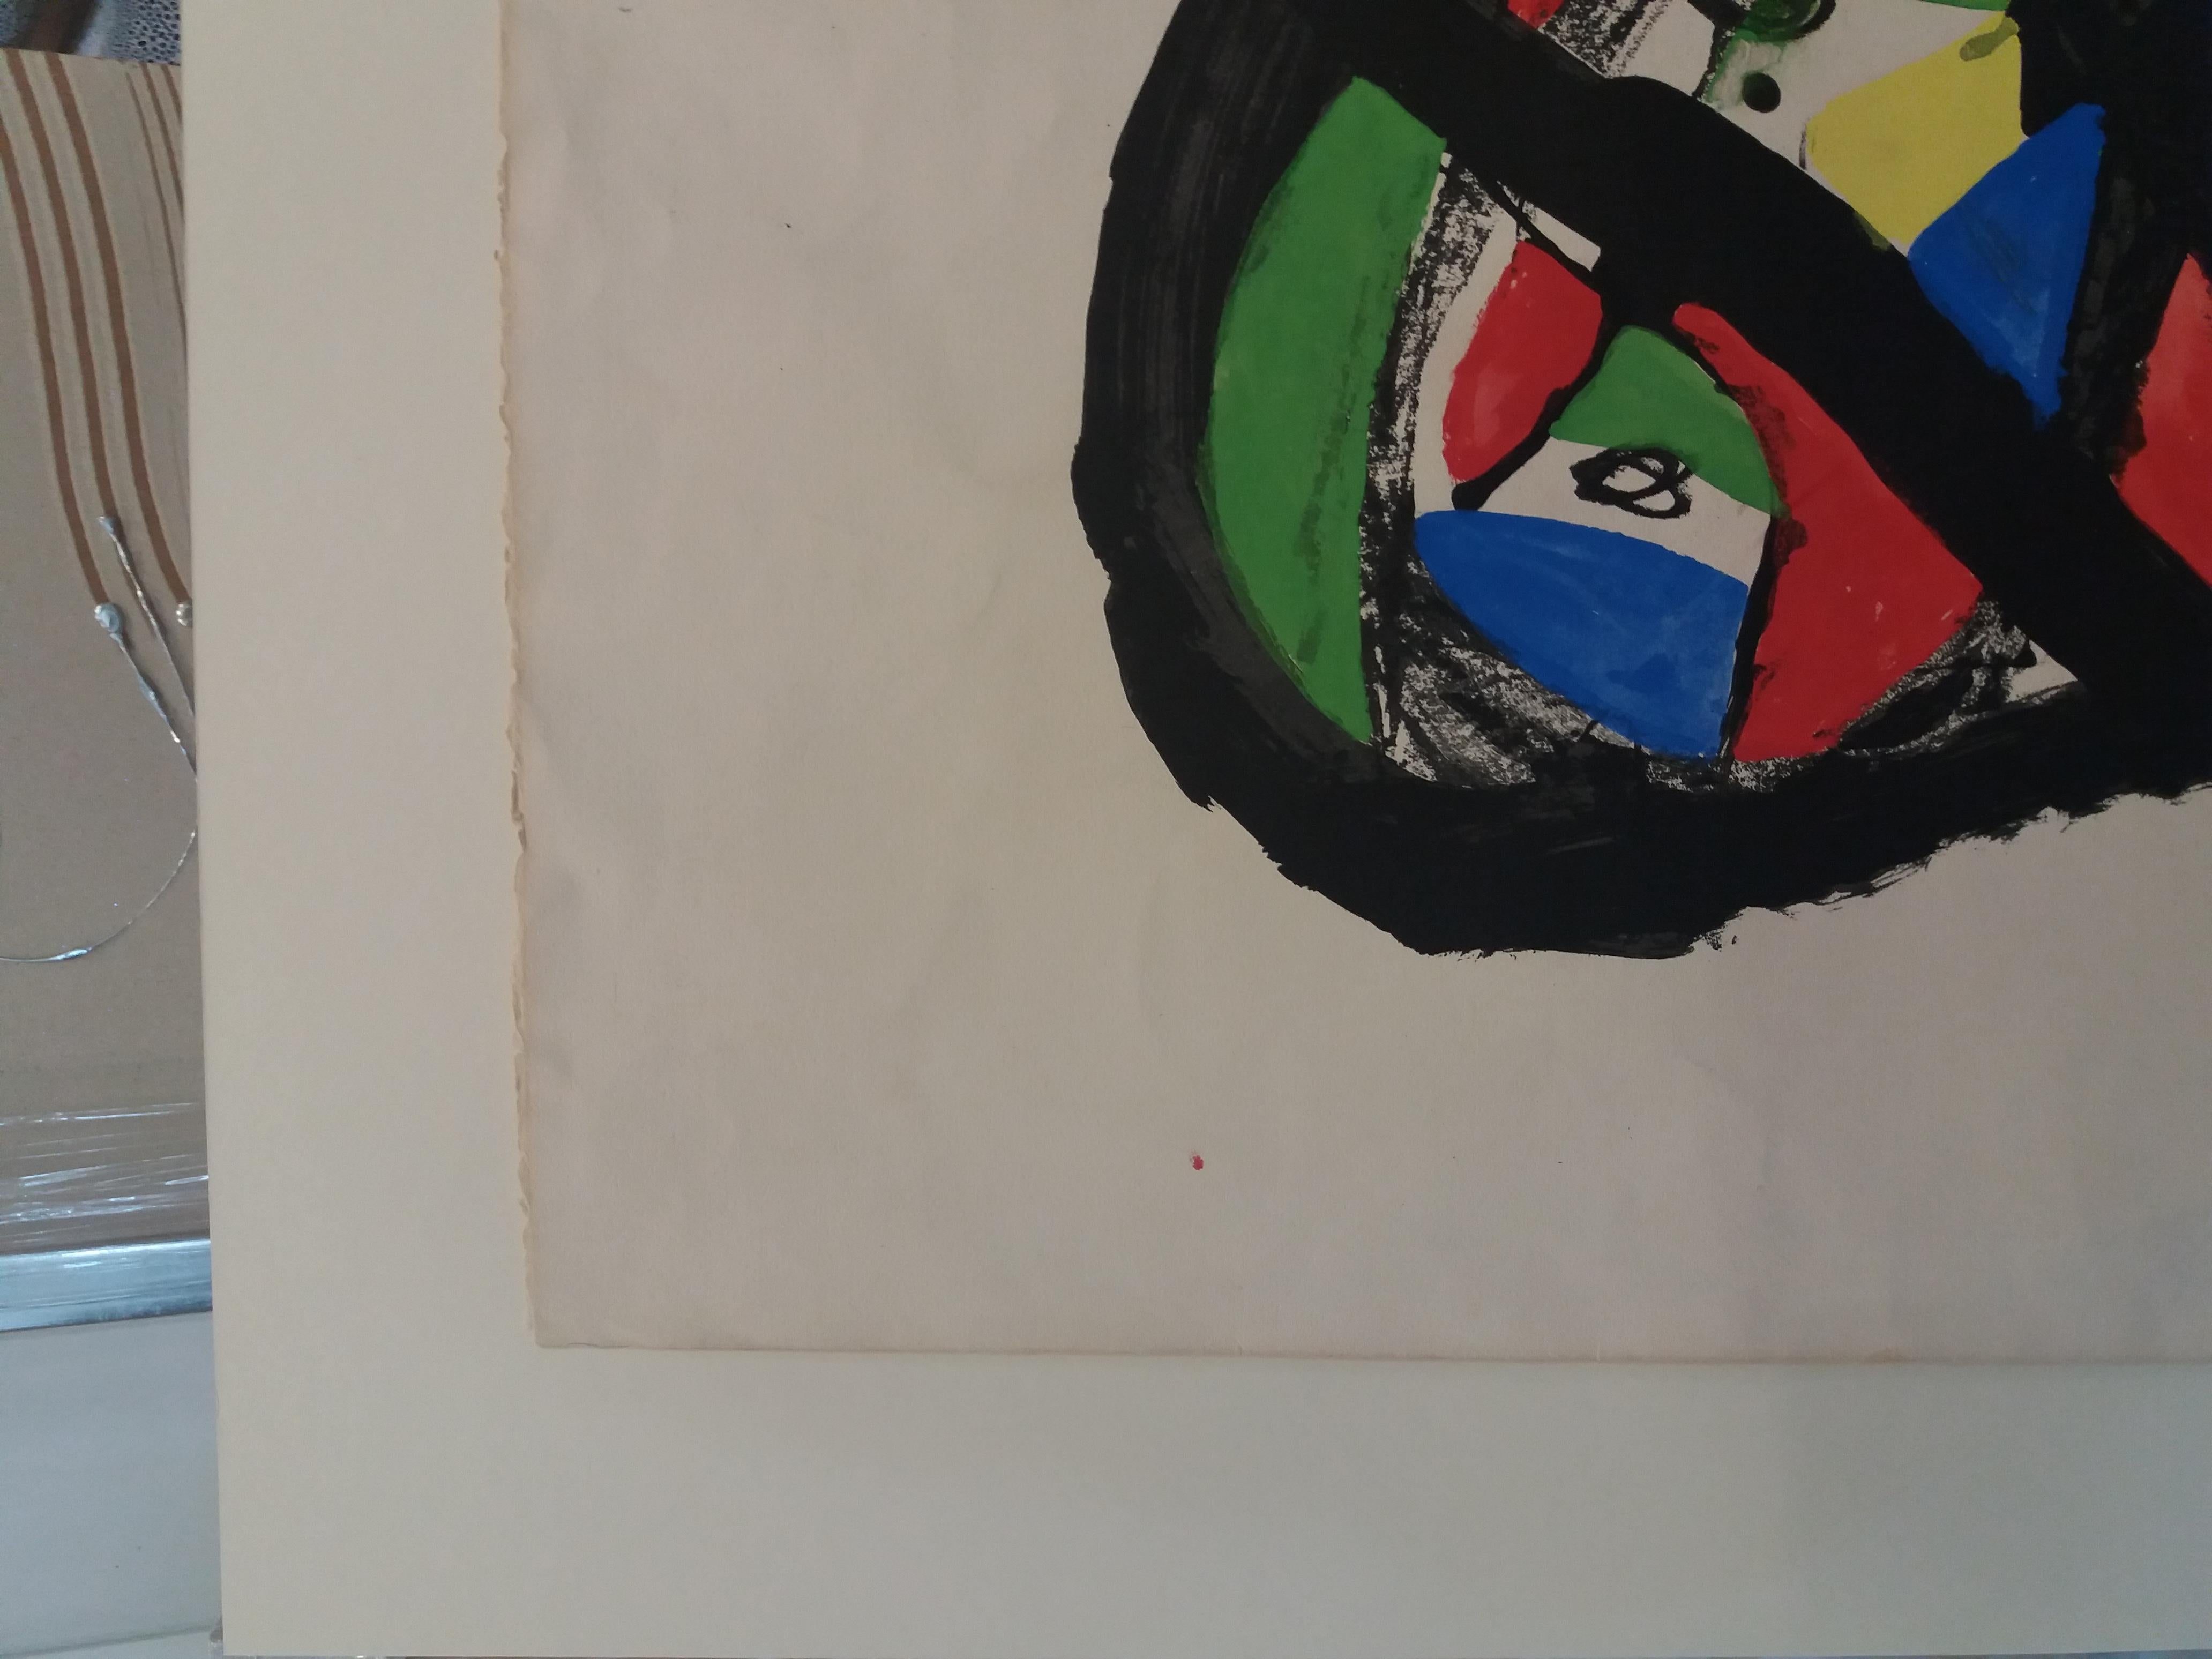 Joan Miro. Originales Einzelstück, Gemälde in Mischtechnik, Gemälde
Joan Miro Ferra
1893-1983
Originalstudie für 